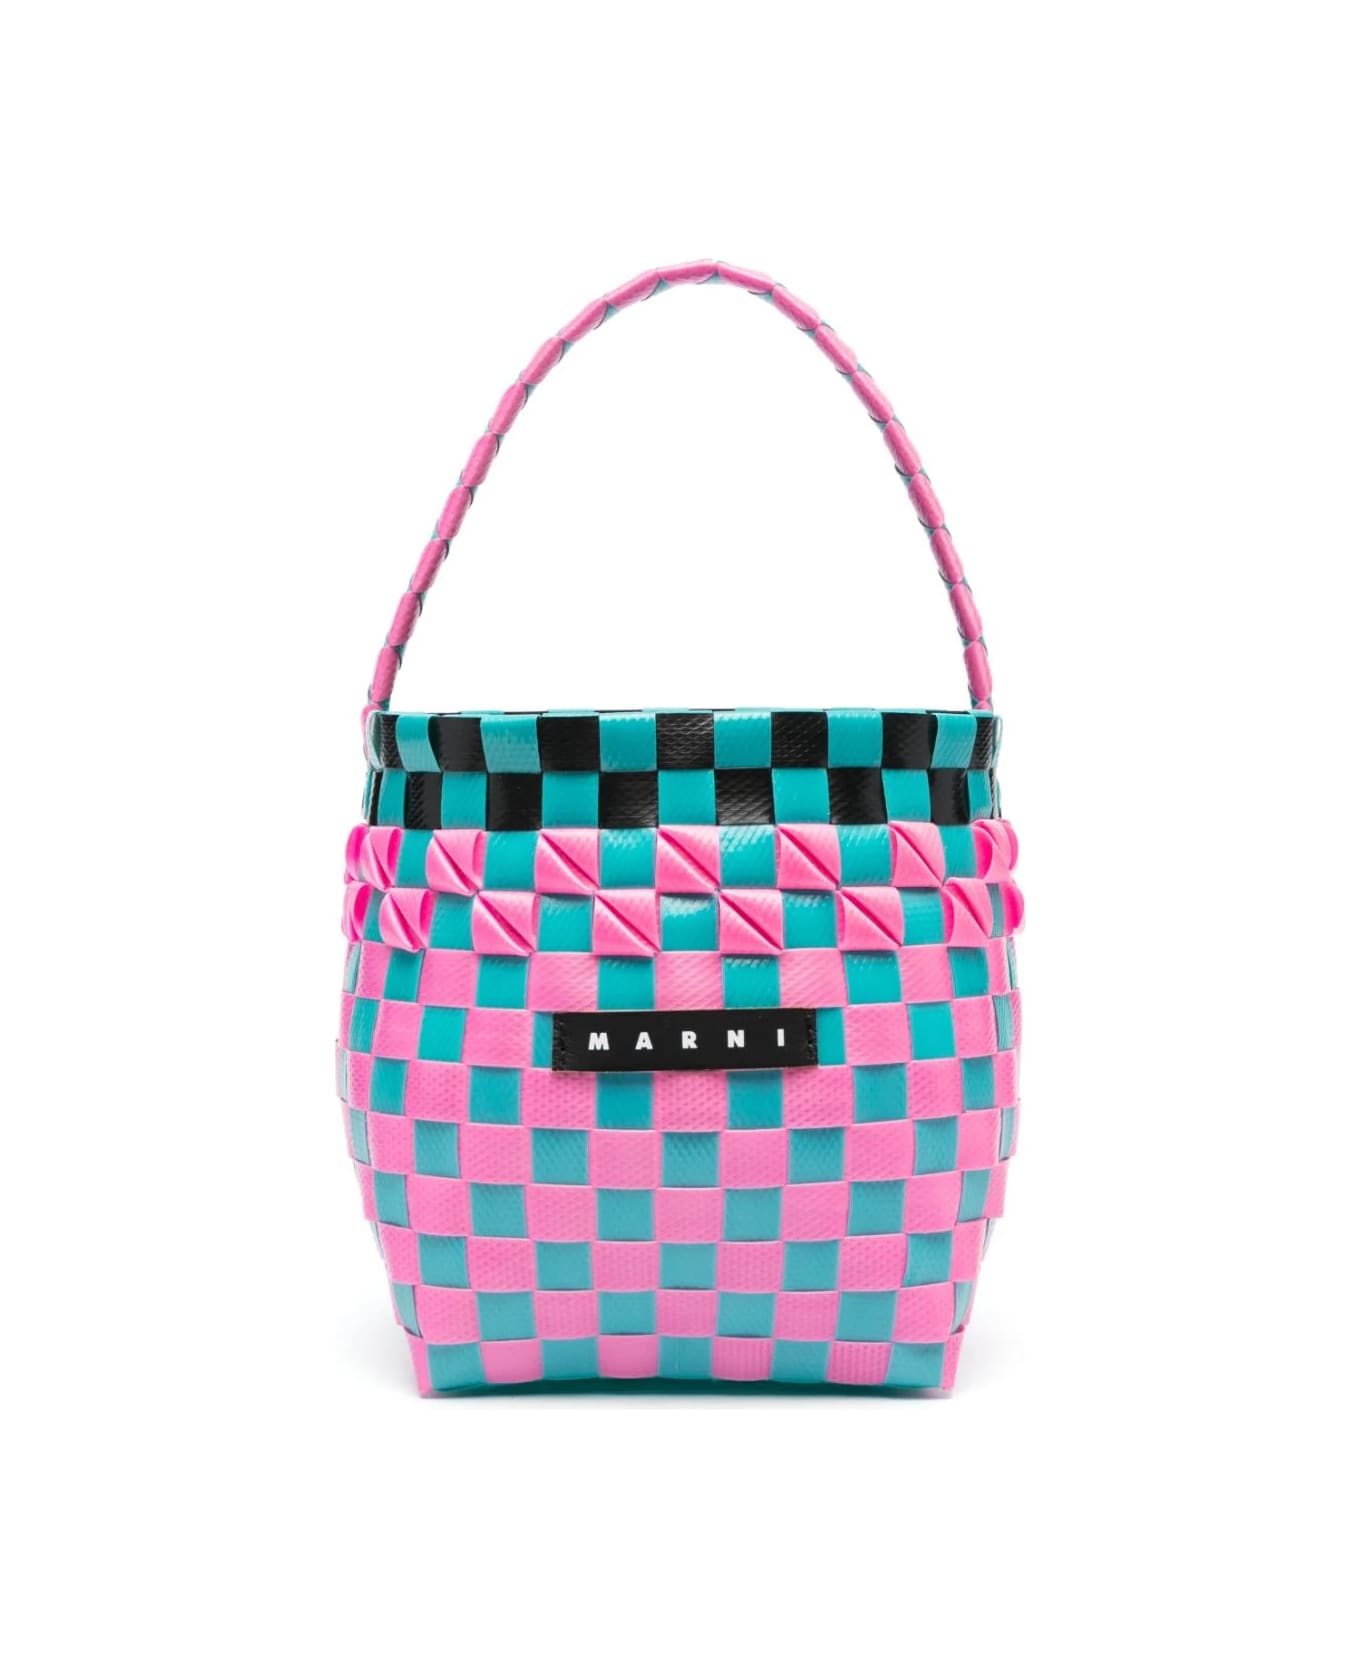 Marni Mini Woven Bucket Bag - Multicolor